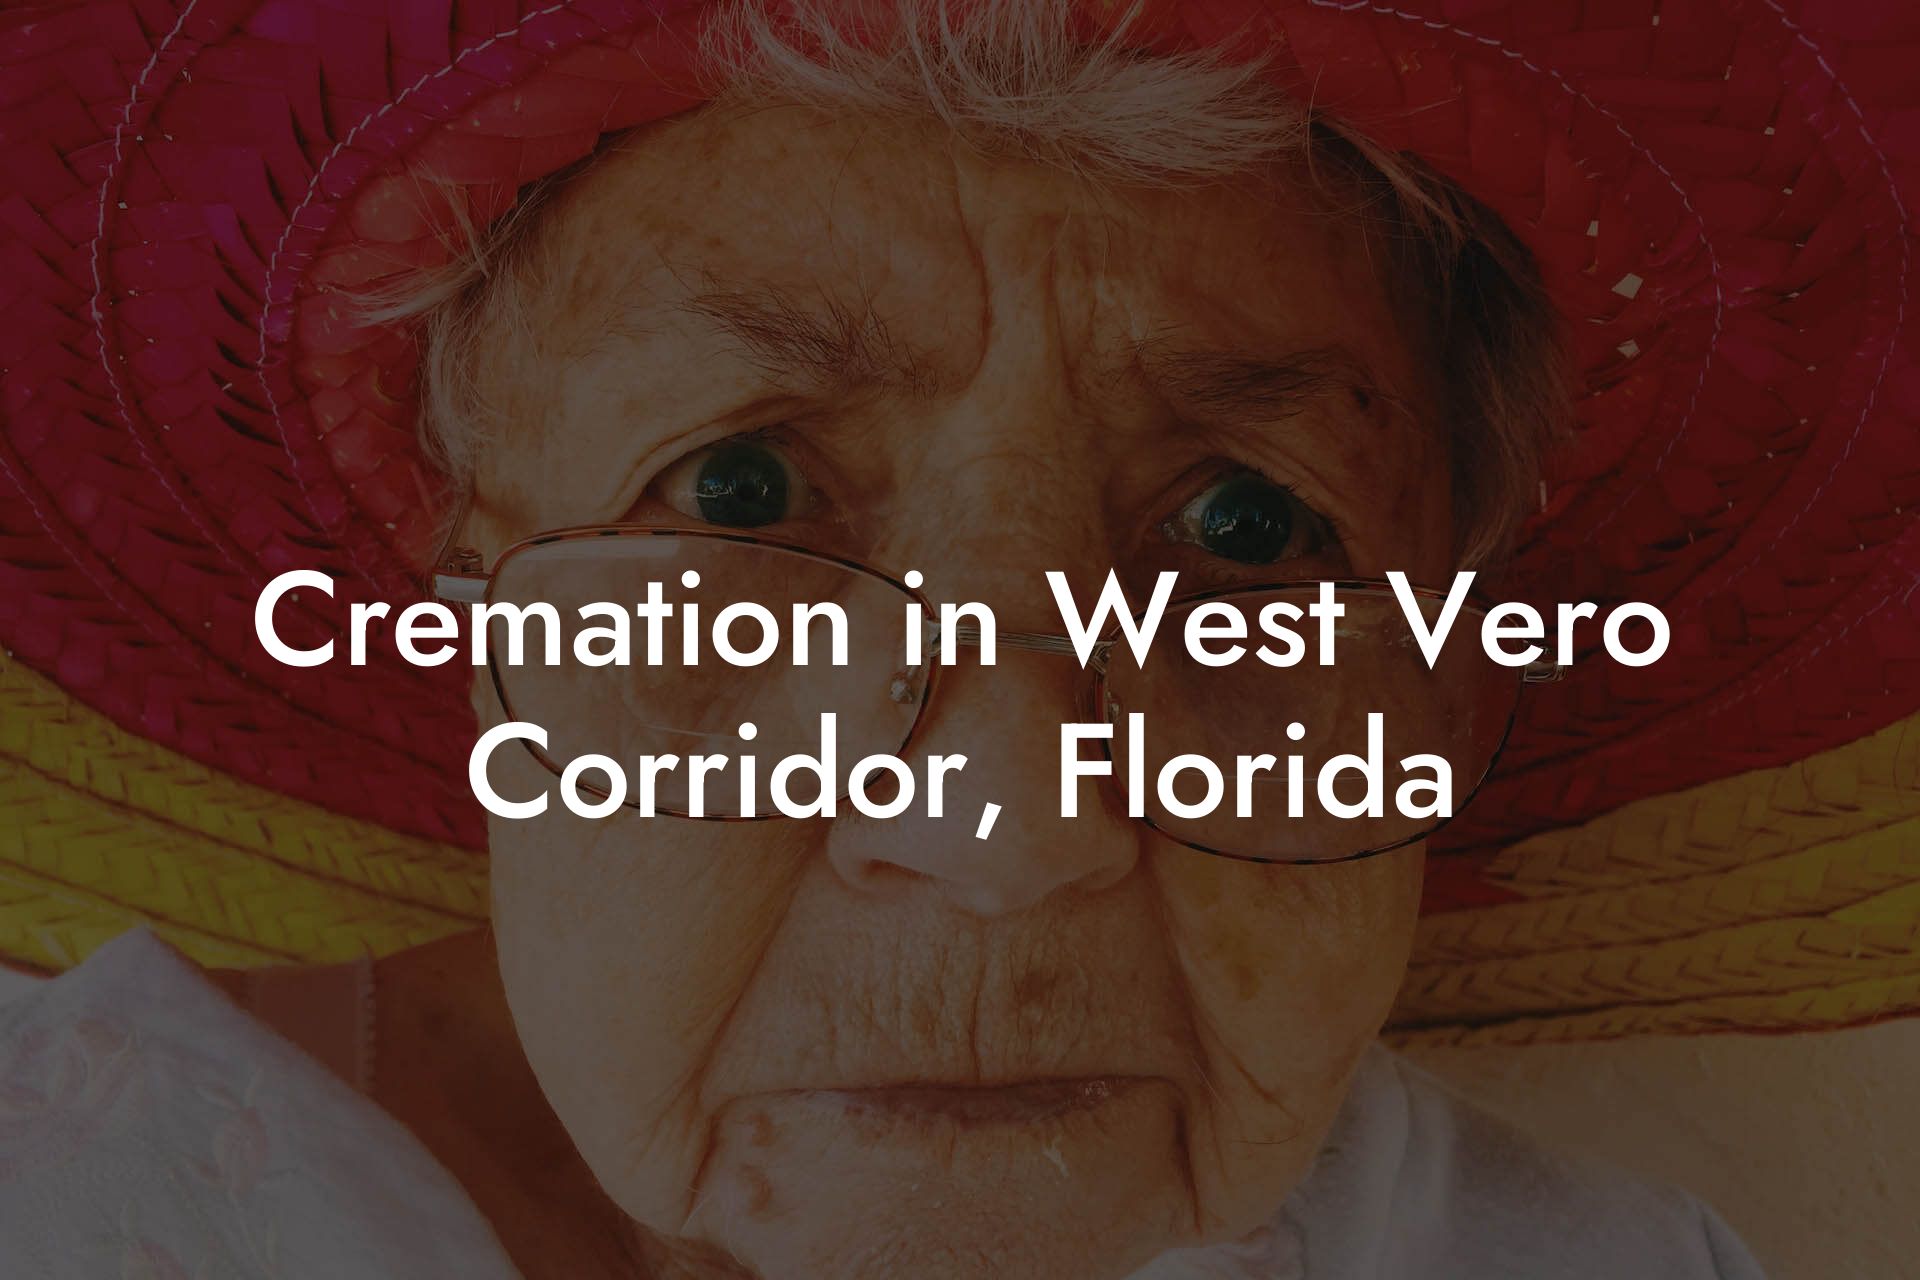 Cremation in West Vero Corridor, Florida